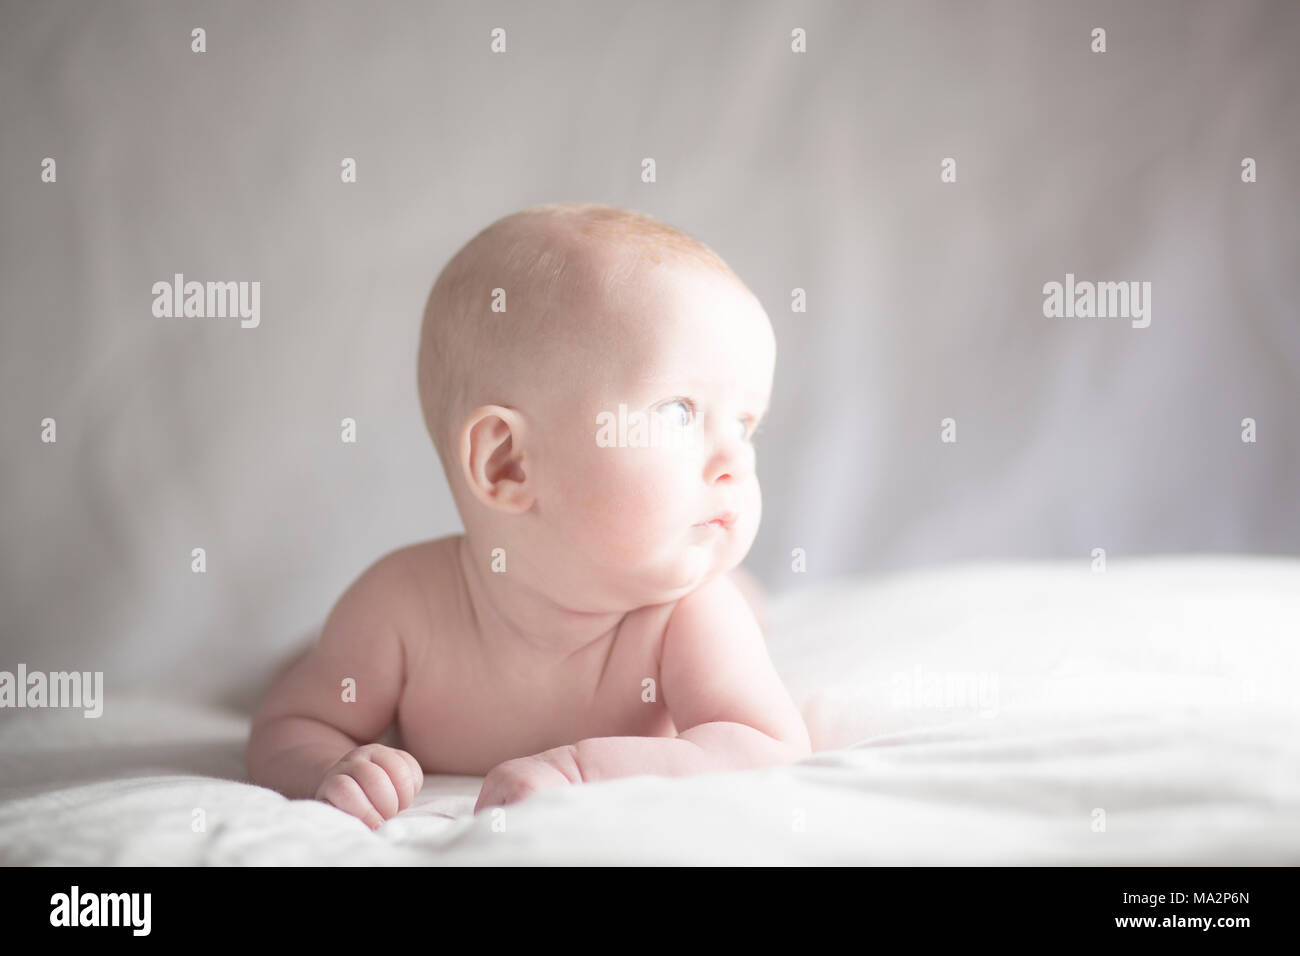 Muy lindo bebé niño mirando hacia la luz con expresión contemplativa Foto de stock